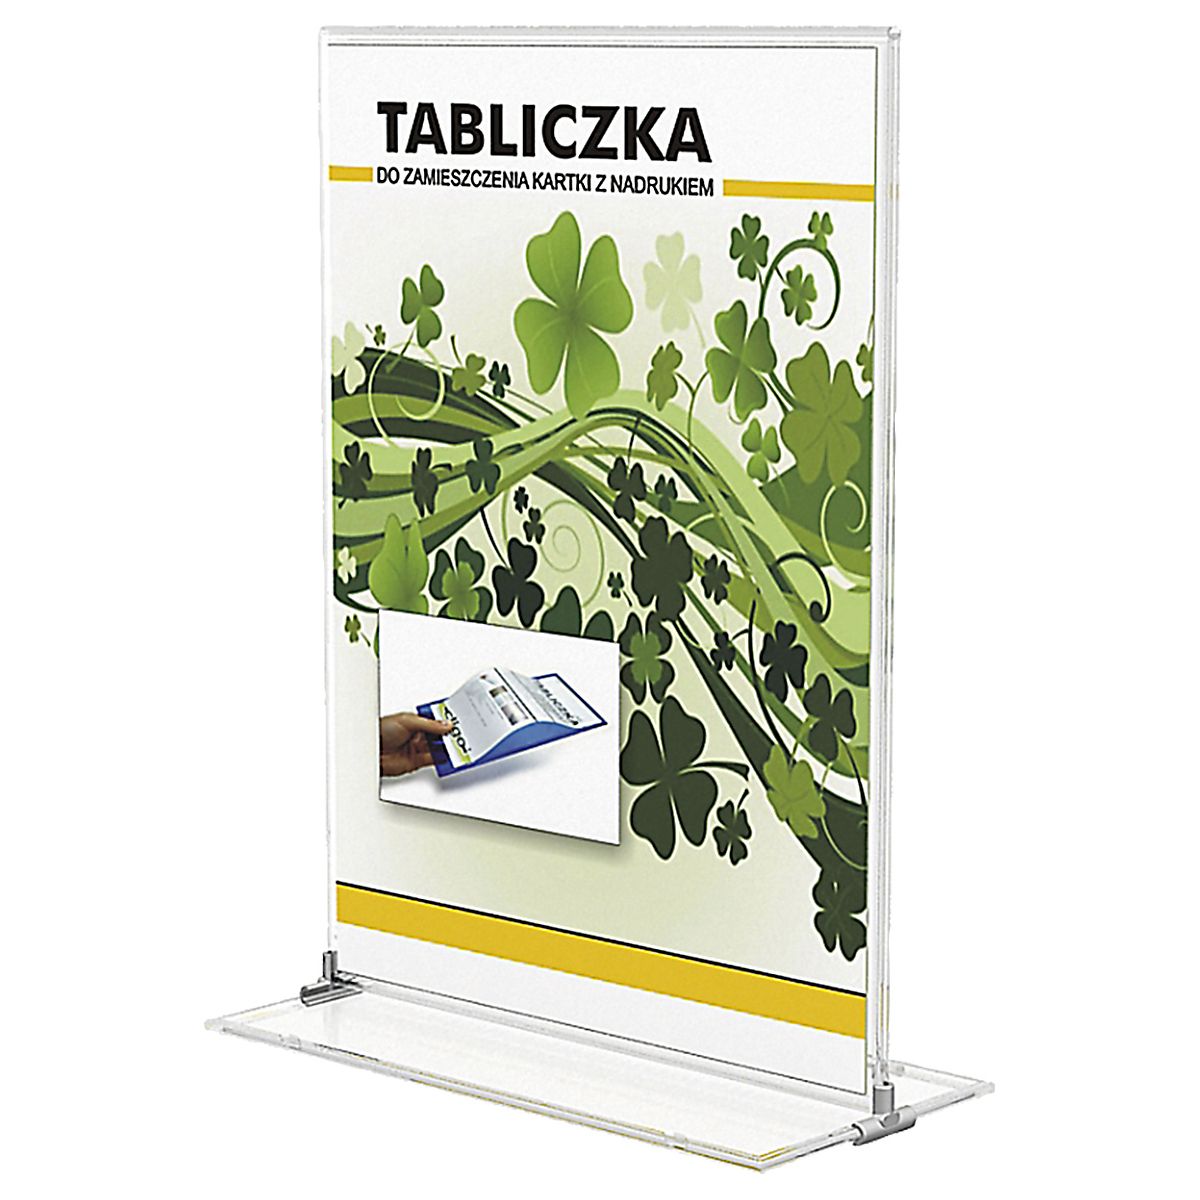 Tabliczka stojąca jednostronna Panta Plast 7 x 11 cm (0403-0005-00)